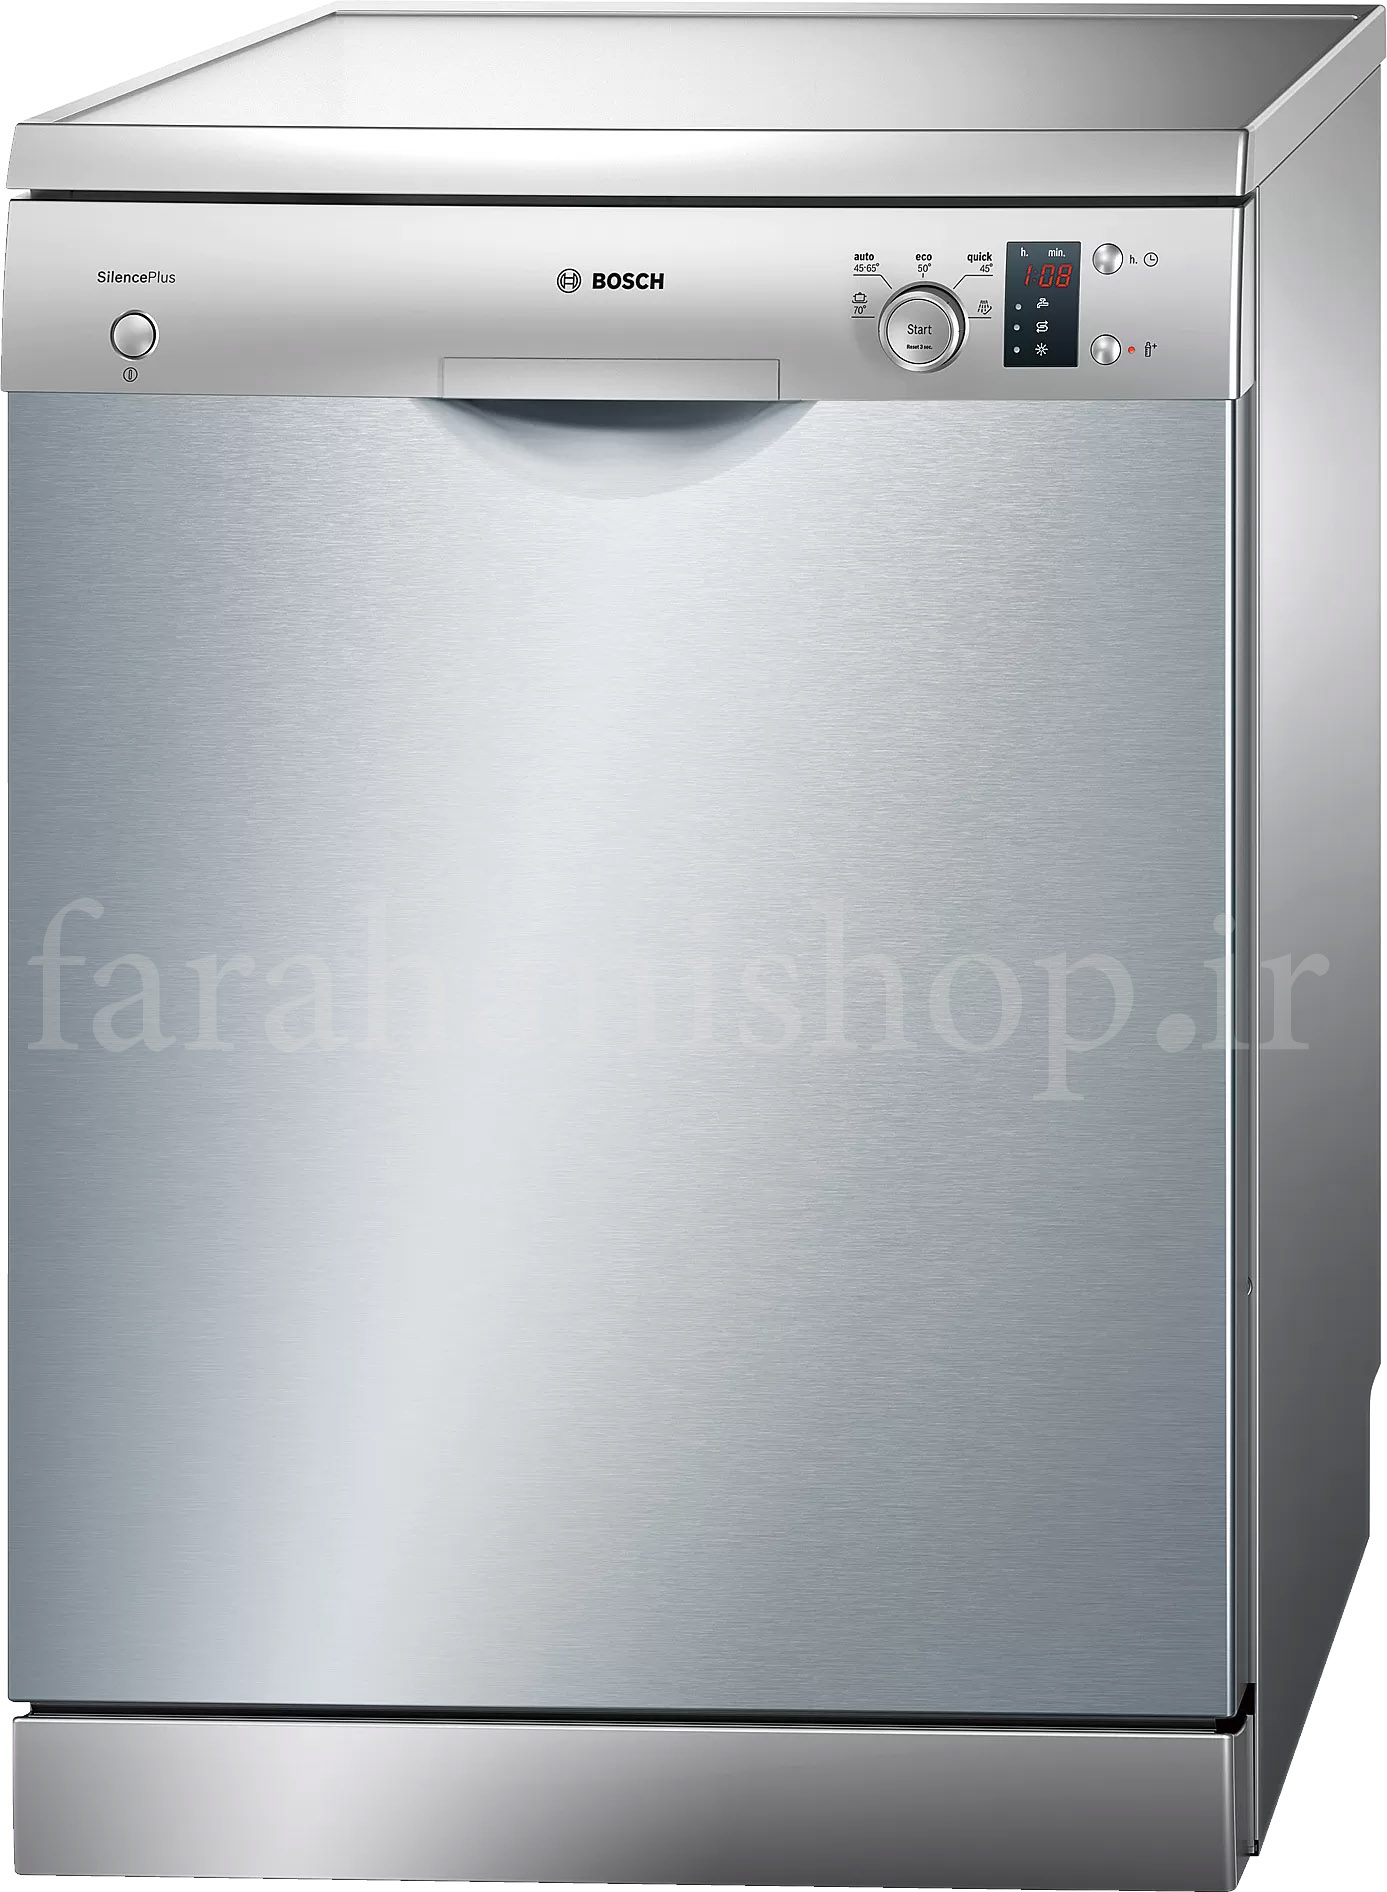 ماشین ظرفشویی بوش مدل sms50d08gc